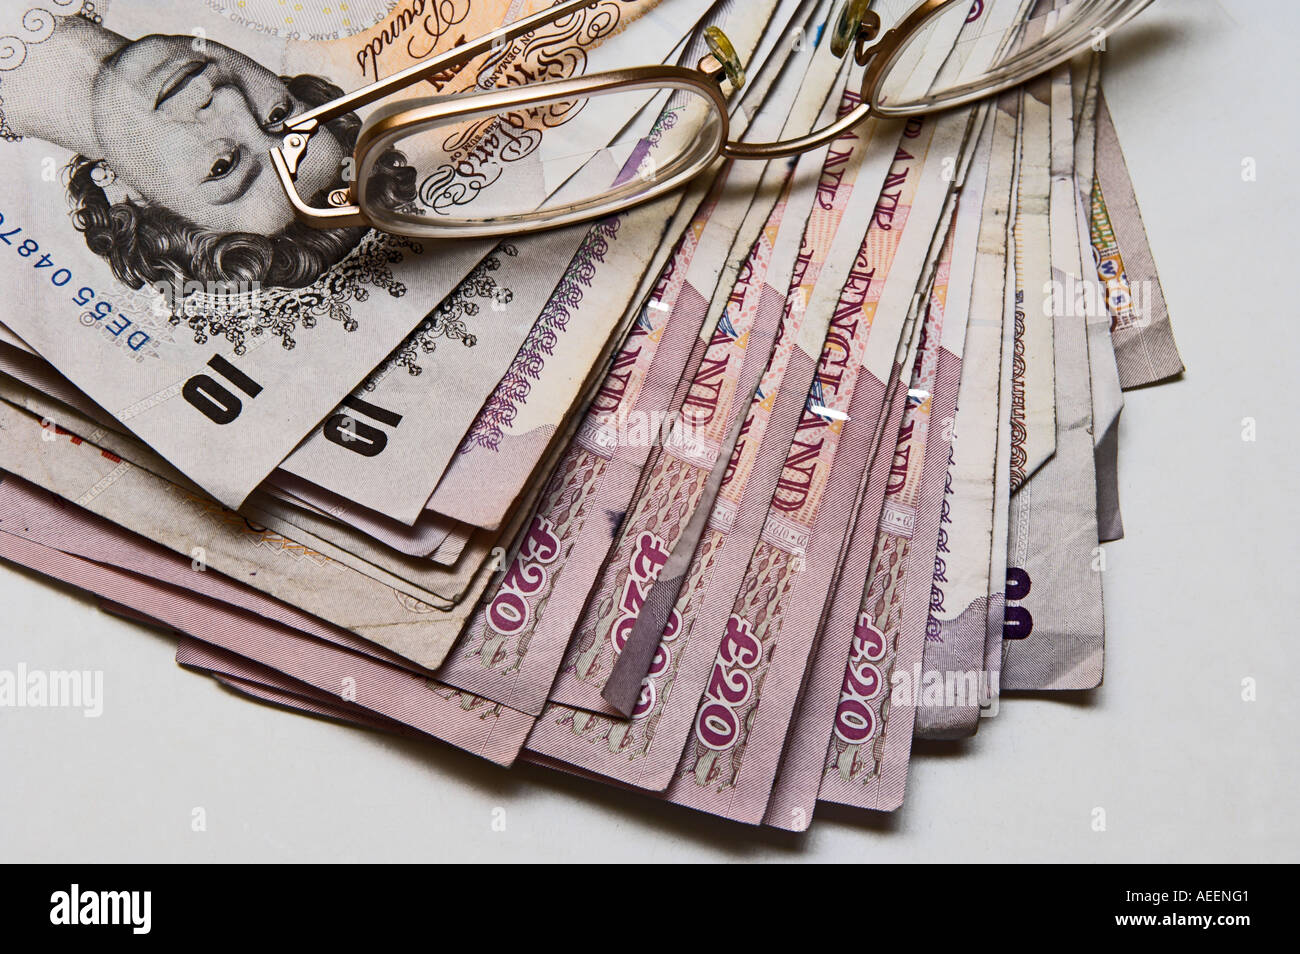 Stapel von verwendet britische Banknoten gemischte Konfessionen mit Metall gerahmte Brille an der Spitze Stockfoto